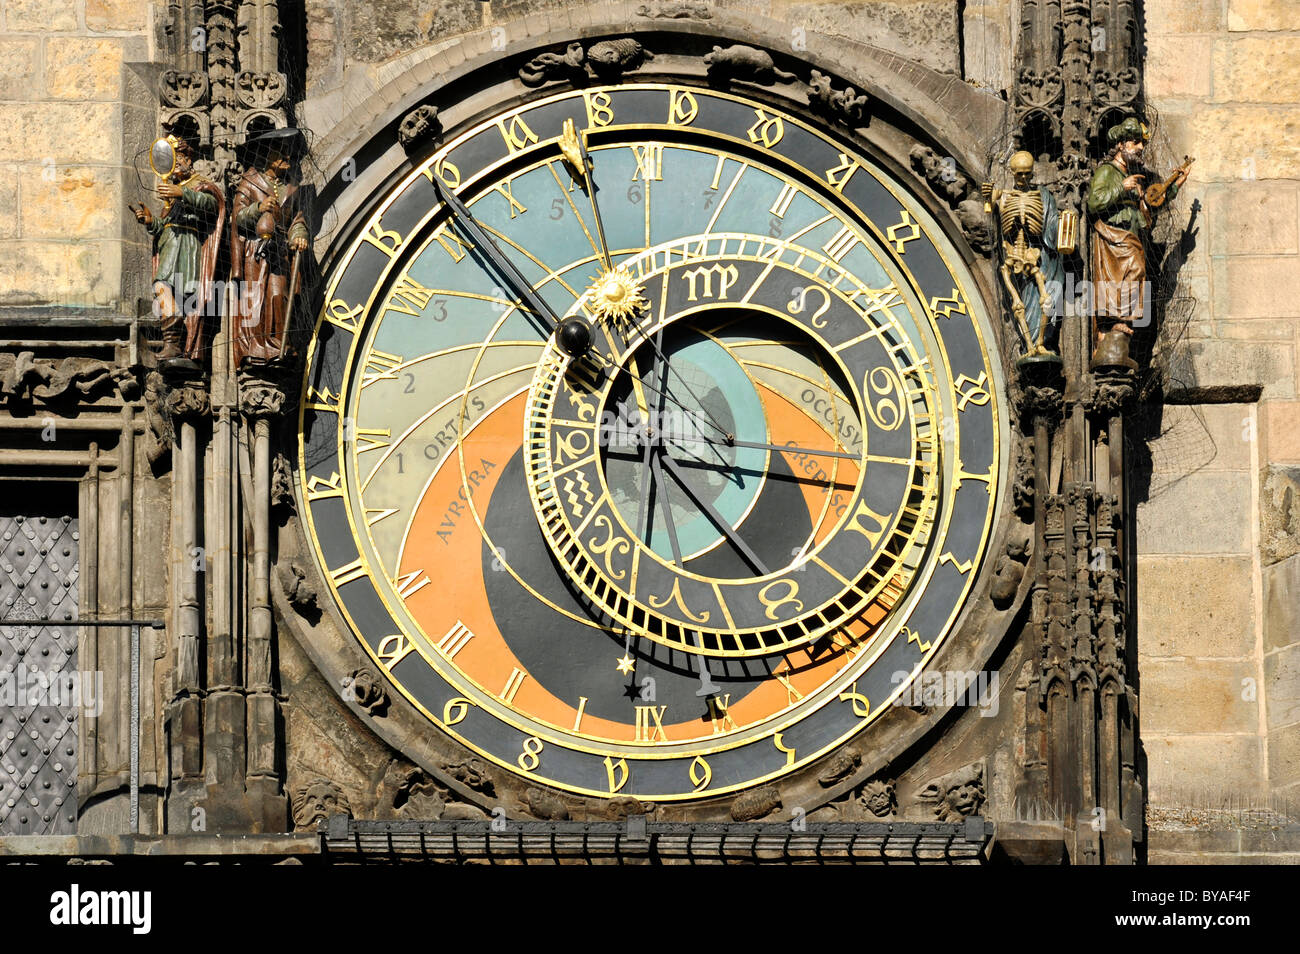 Astronomische Zifferblatt der Prager astronomischen Uhr auf dem Uhrturm des Altstädter Rathaus, Altstädter Ring Stockfoto